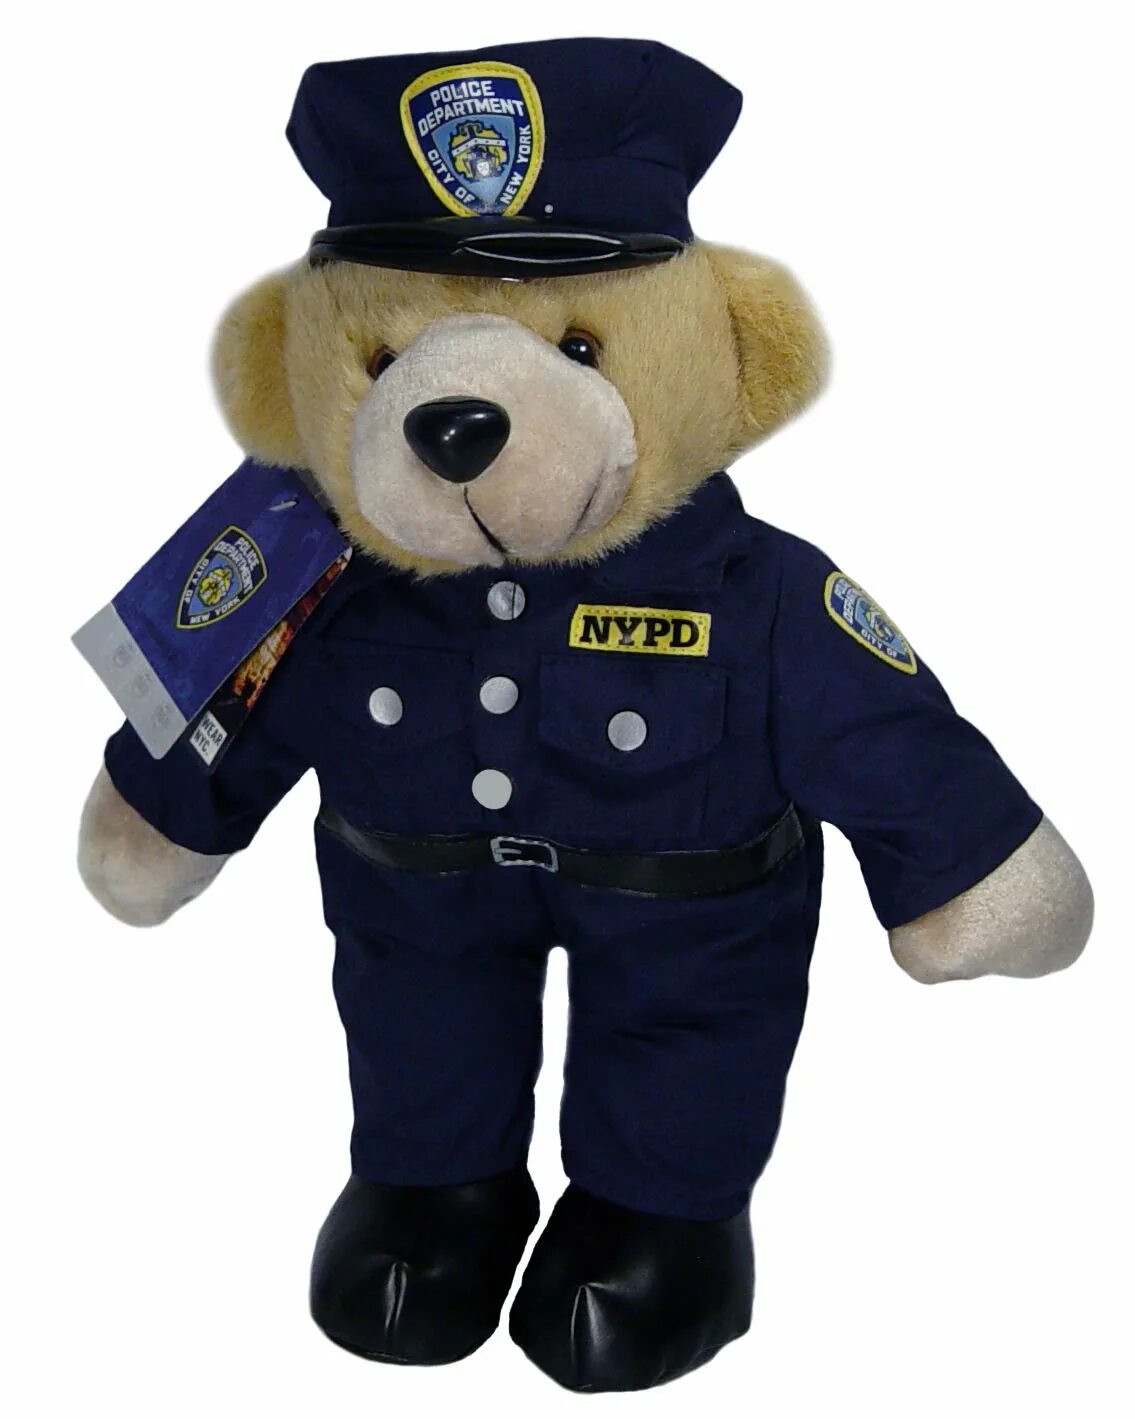 Полицейские игрушки. Мягкая игрушка в полицейской форме. Игрушечная полиция. Игрушечный милиционер. Игрушка полицейская купить